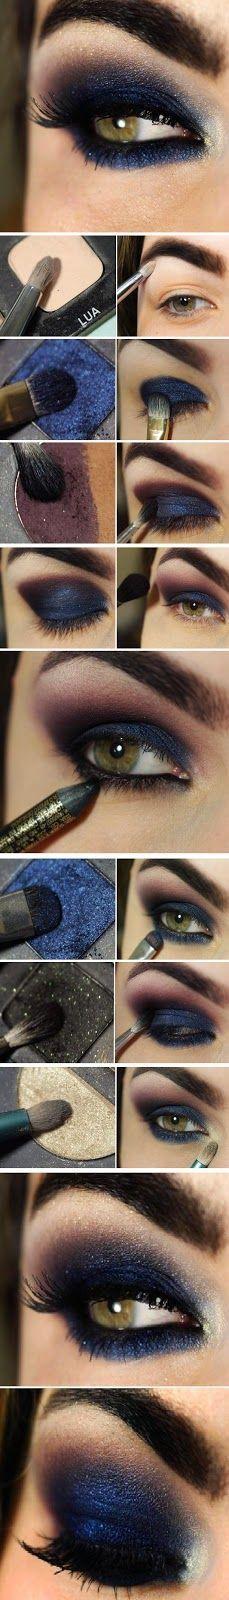 زفاف - DIY Navy Blue Eye Makeup Makeup Eye Shadow How To Diy Makeup Eye Makeup Eye Liner Makeup Tutorials Eye Makeup Tutorials